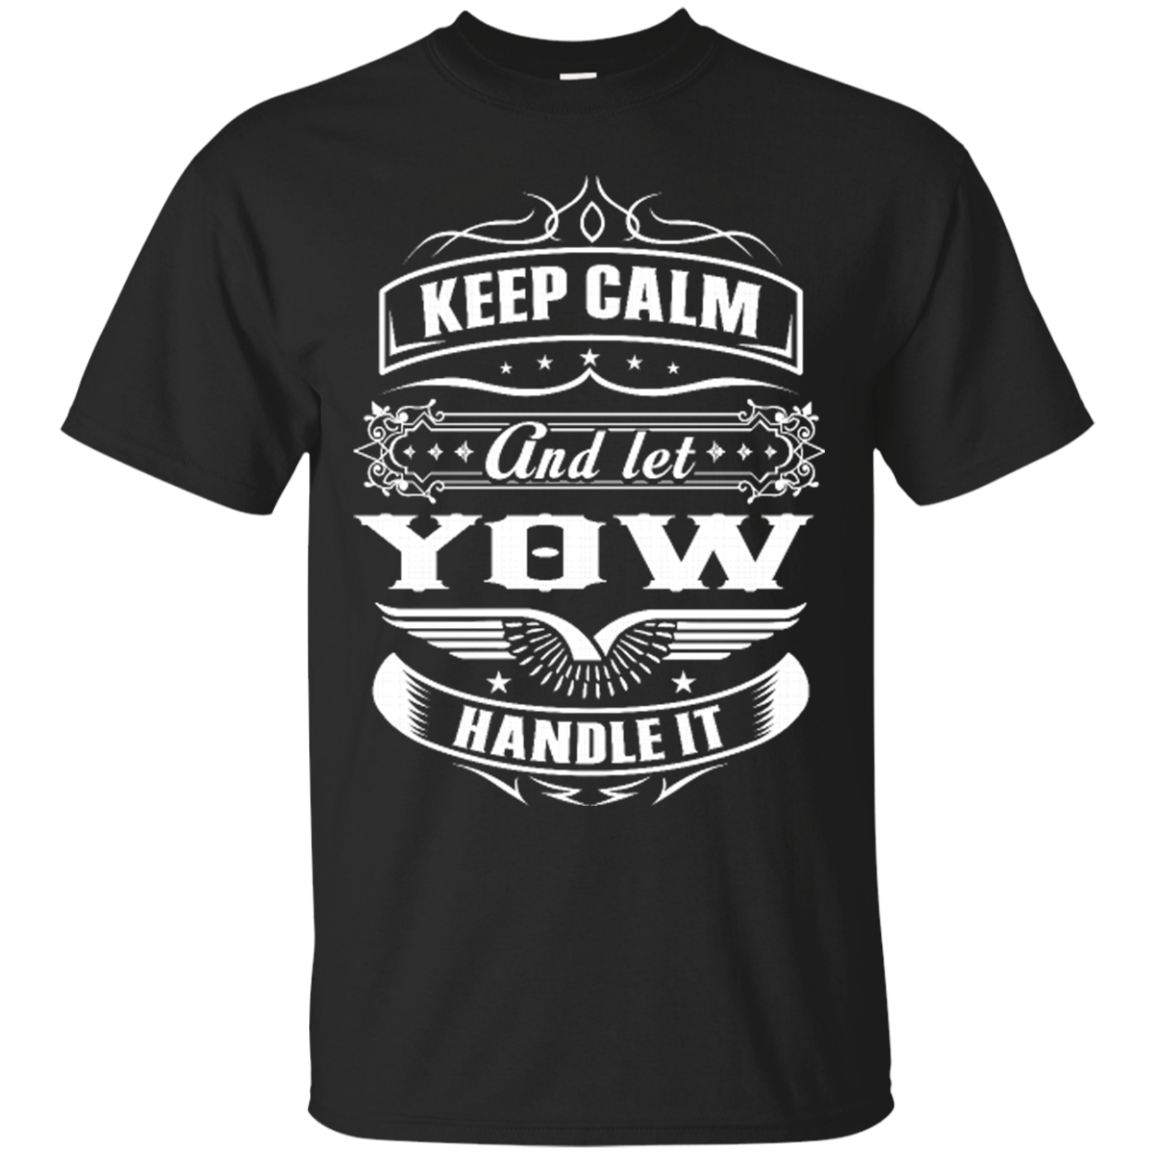 Yow Shirts Keep Calm And Let Yow Handle It T Shirts Teesmiley 2014